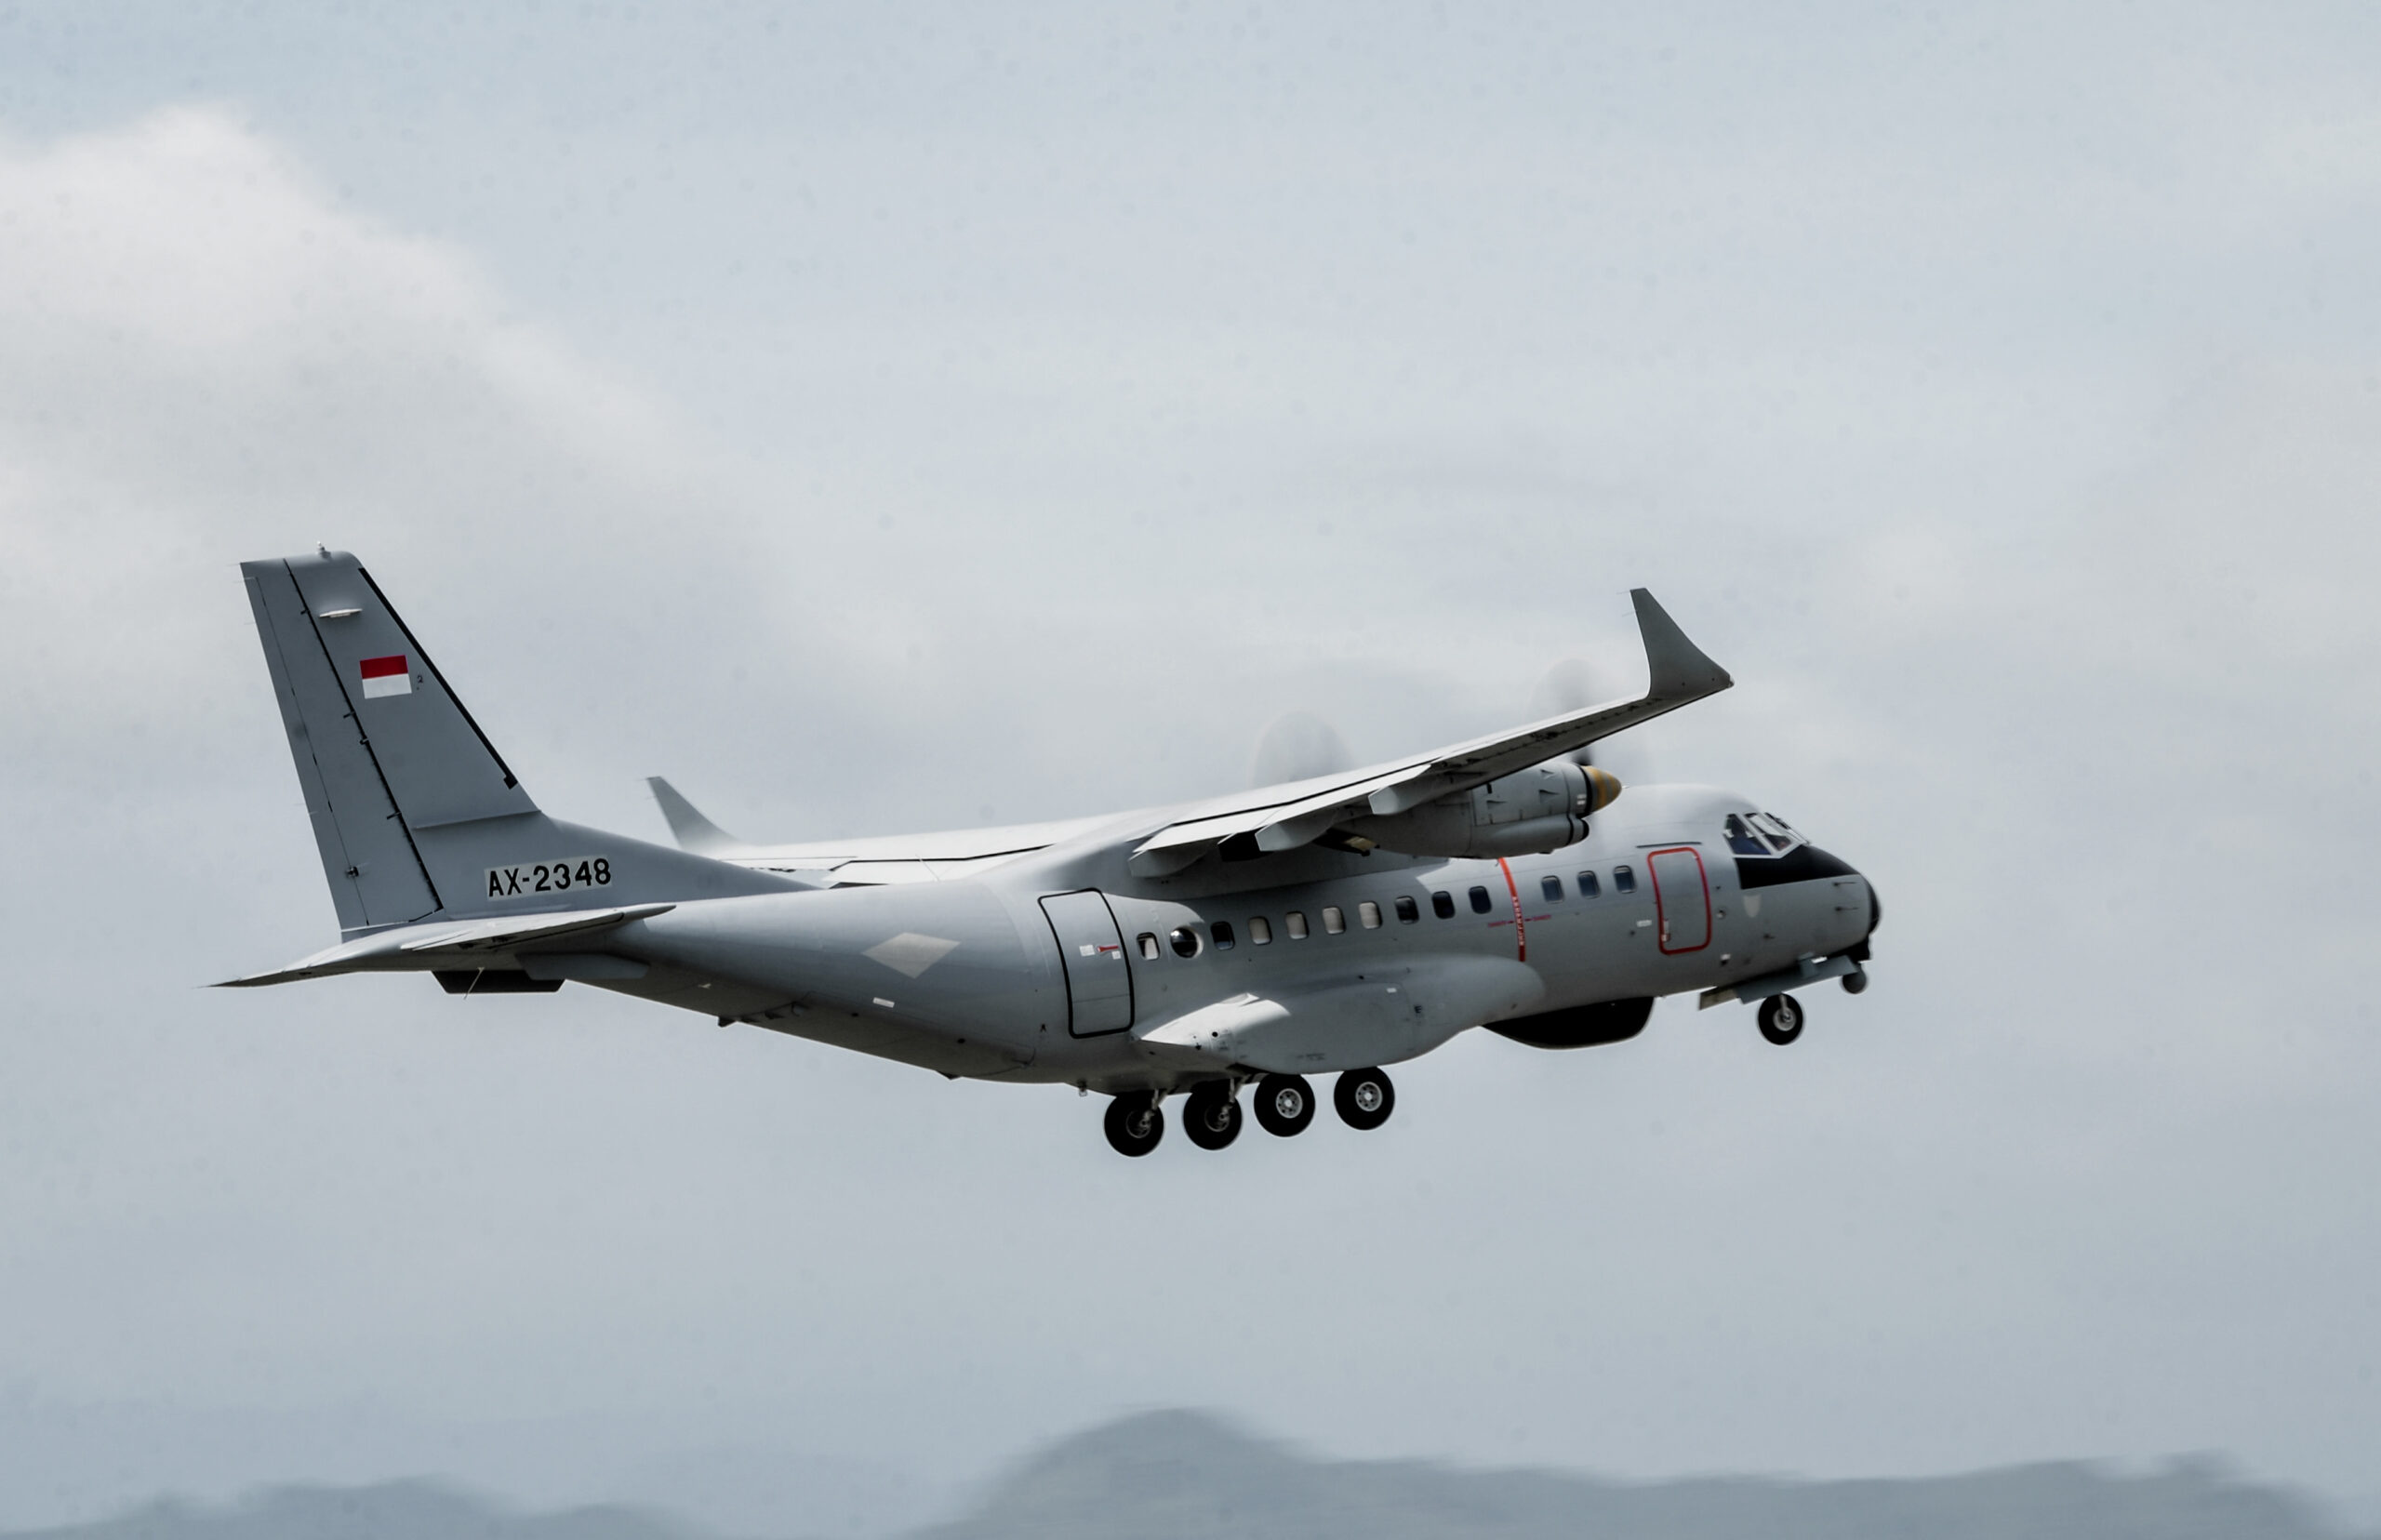 Nigeria membeli pesawat angkut militer CN235-220 dari Indonesia